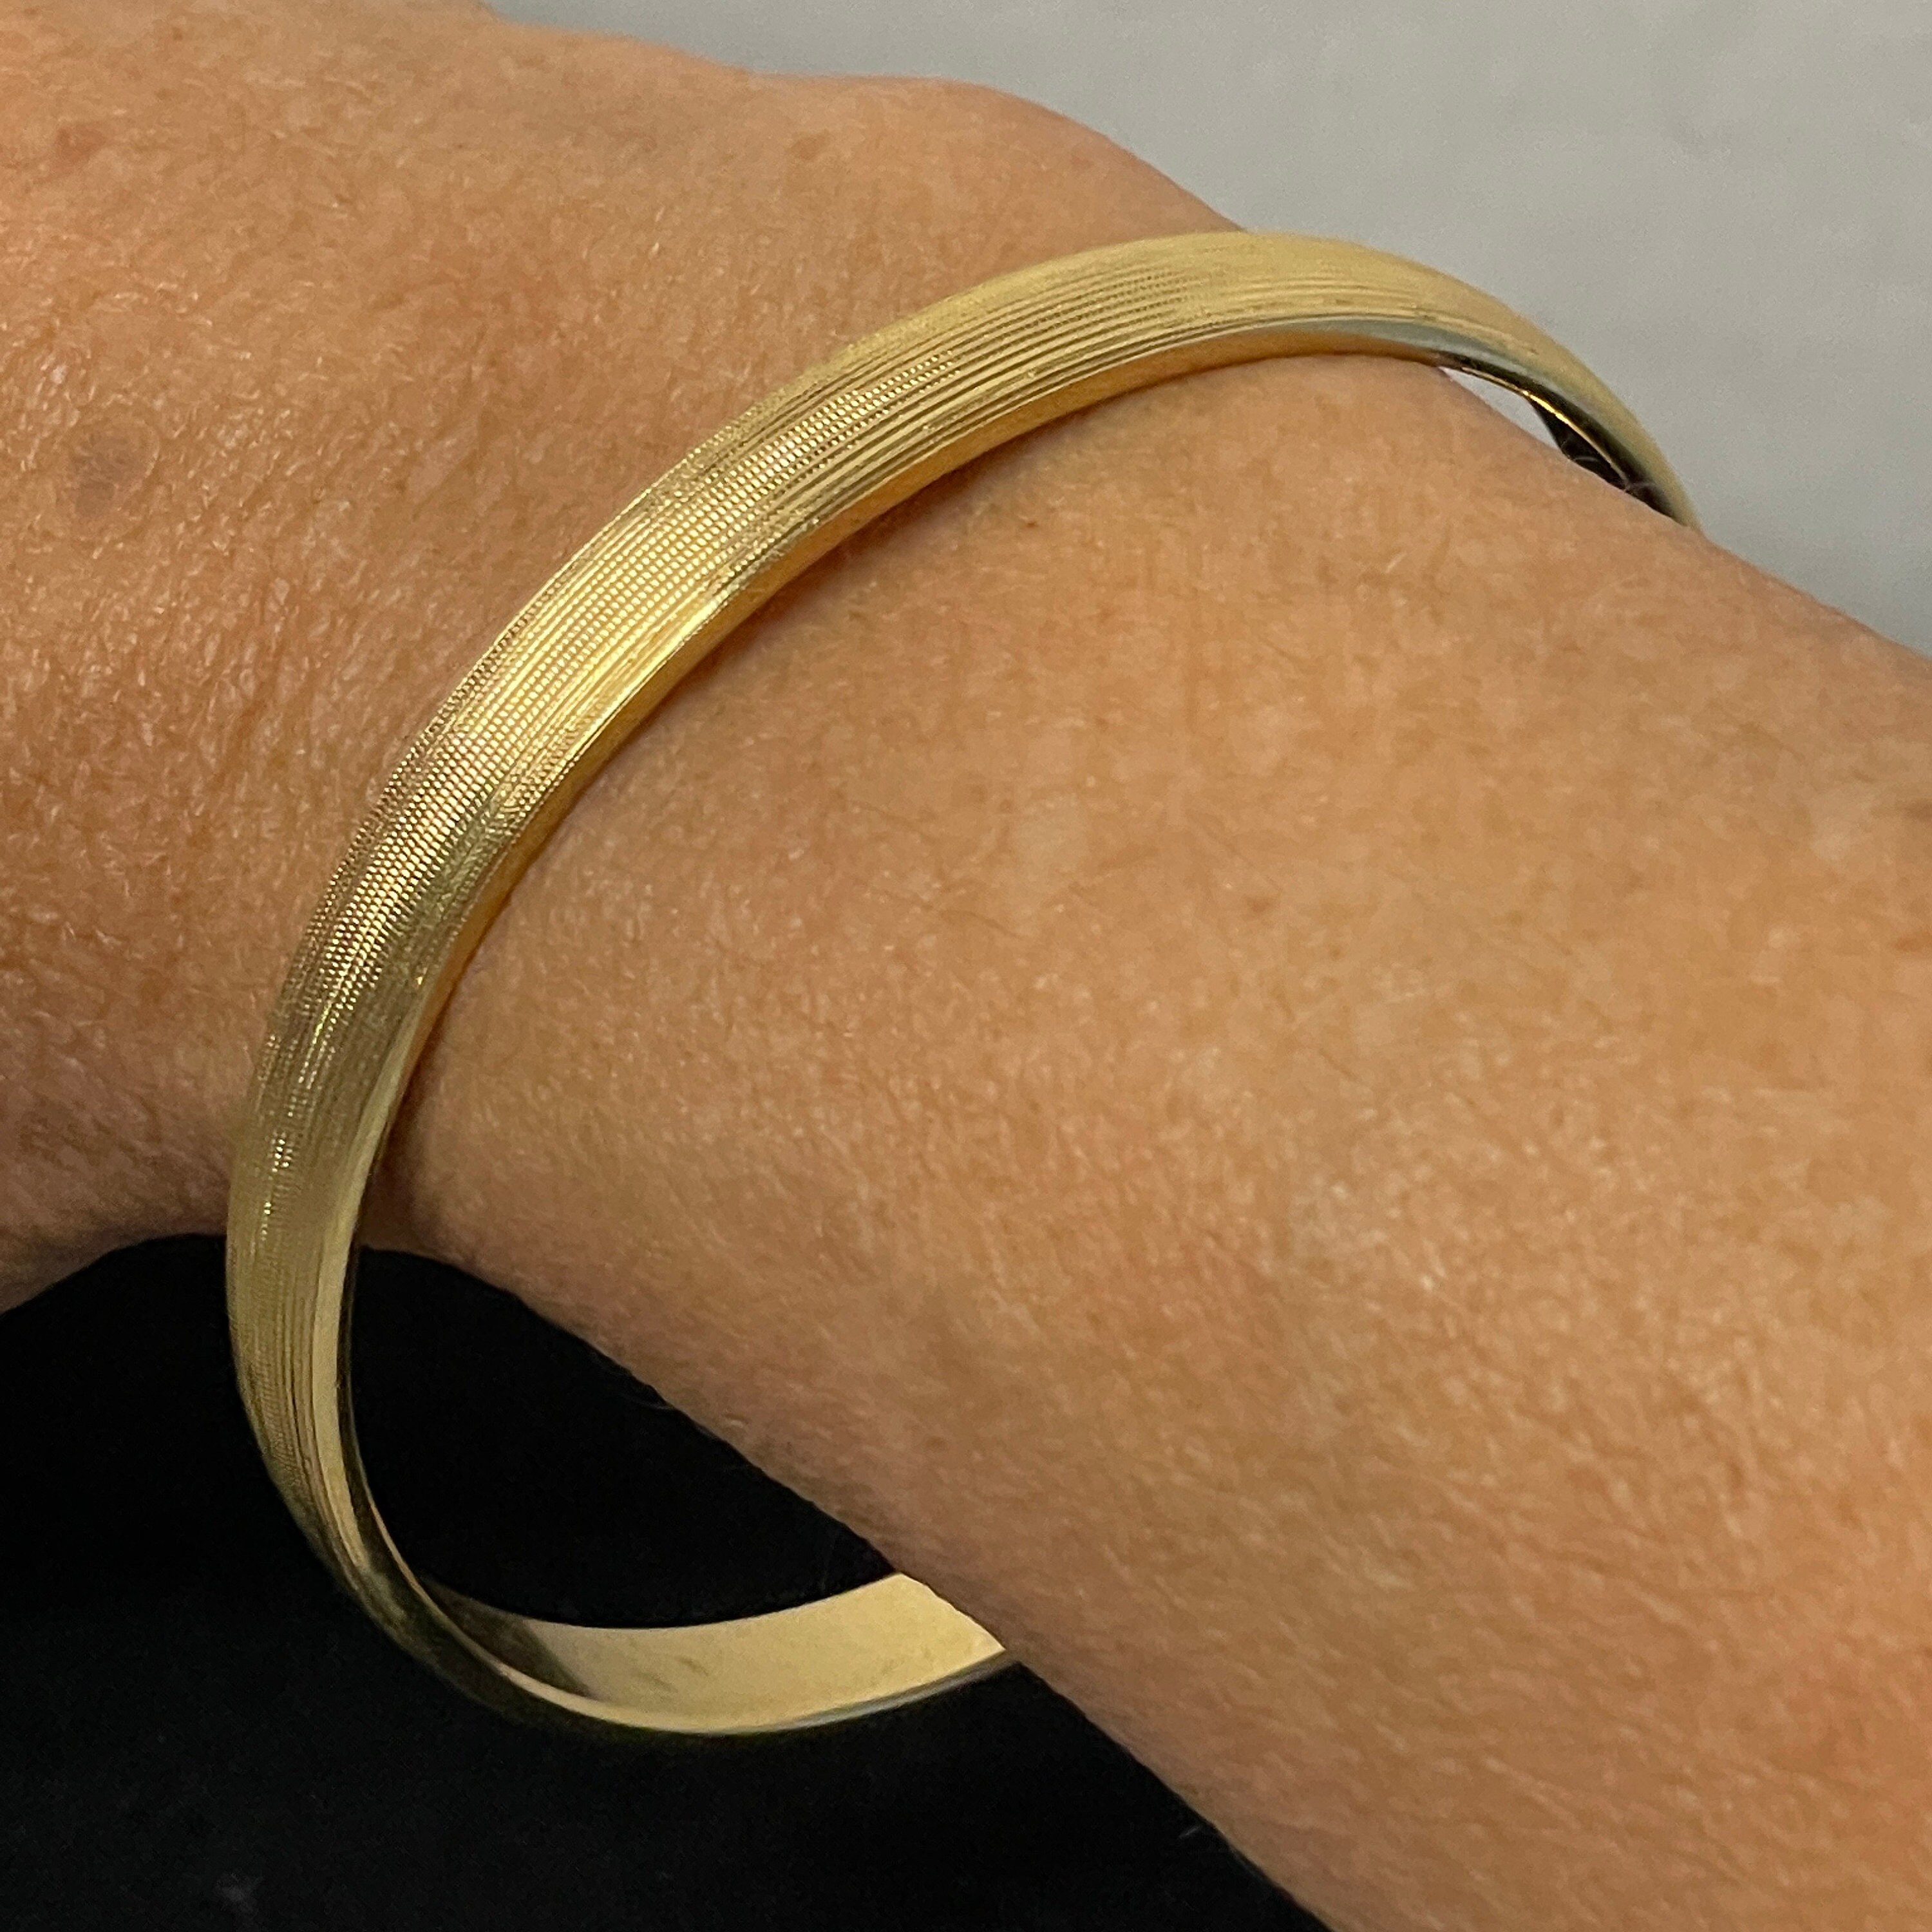 Monet Solid Gold Bracelet - Etsy